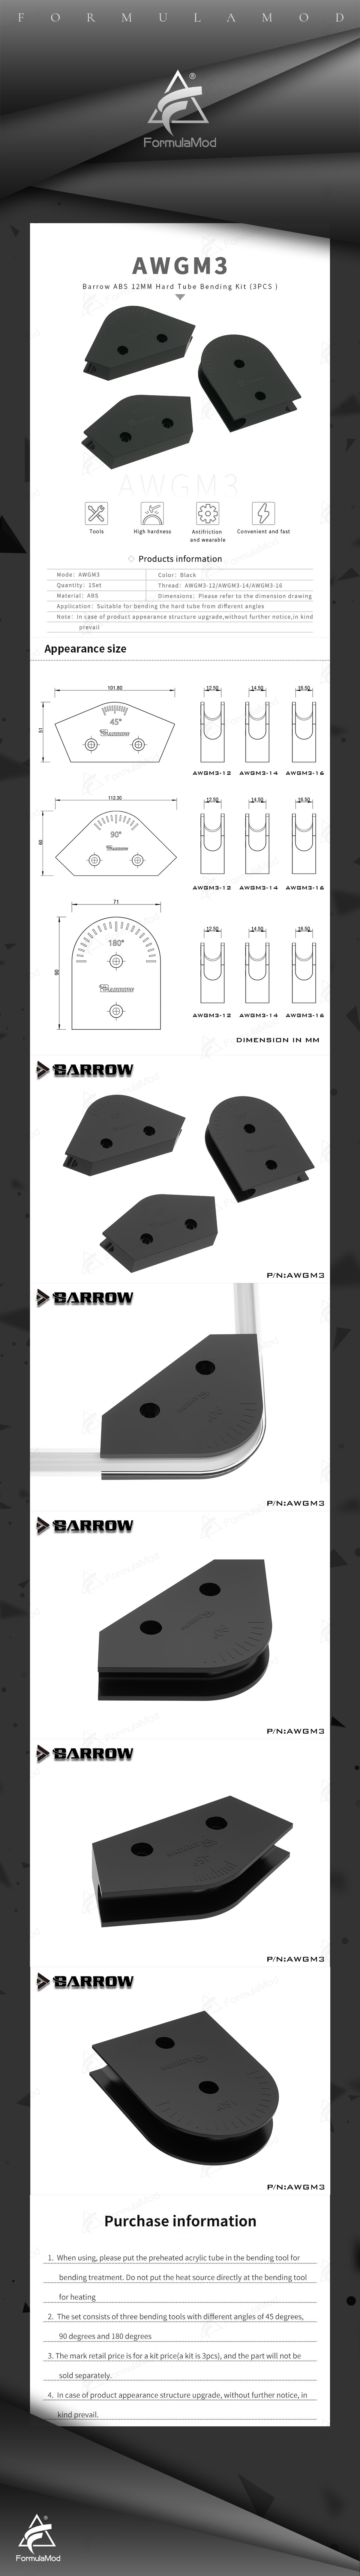 Barrow Mould For Hard Tube Bending, 45°/90°/180° Mold Bender For OD12/14/16 Acrylic/PETG Hard Tube, ABS Bending Mould Kit, AWGM3  